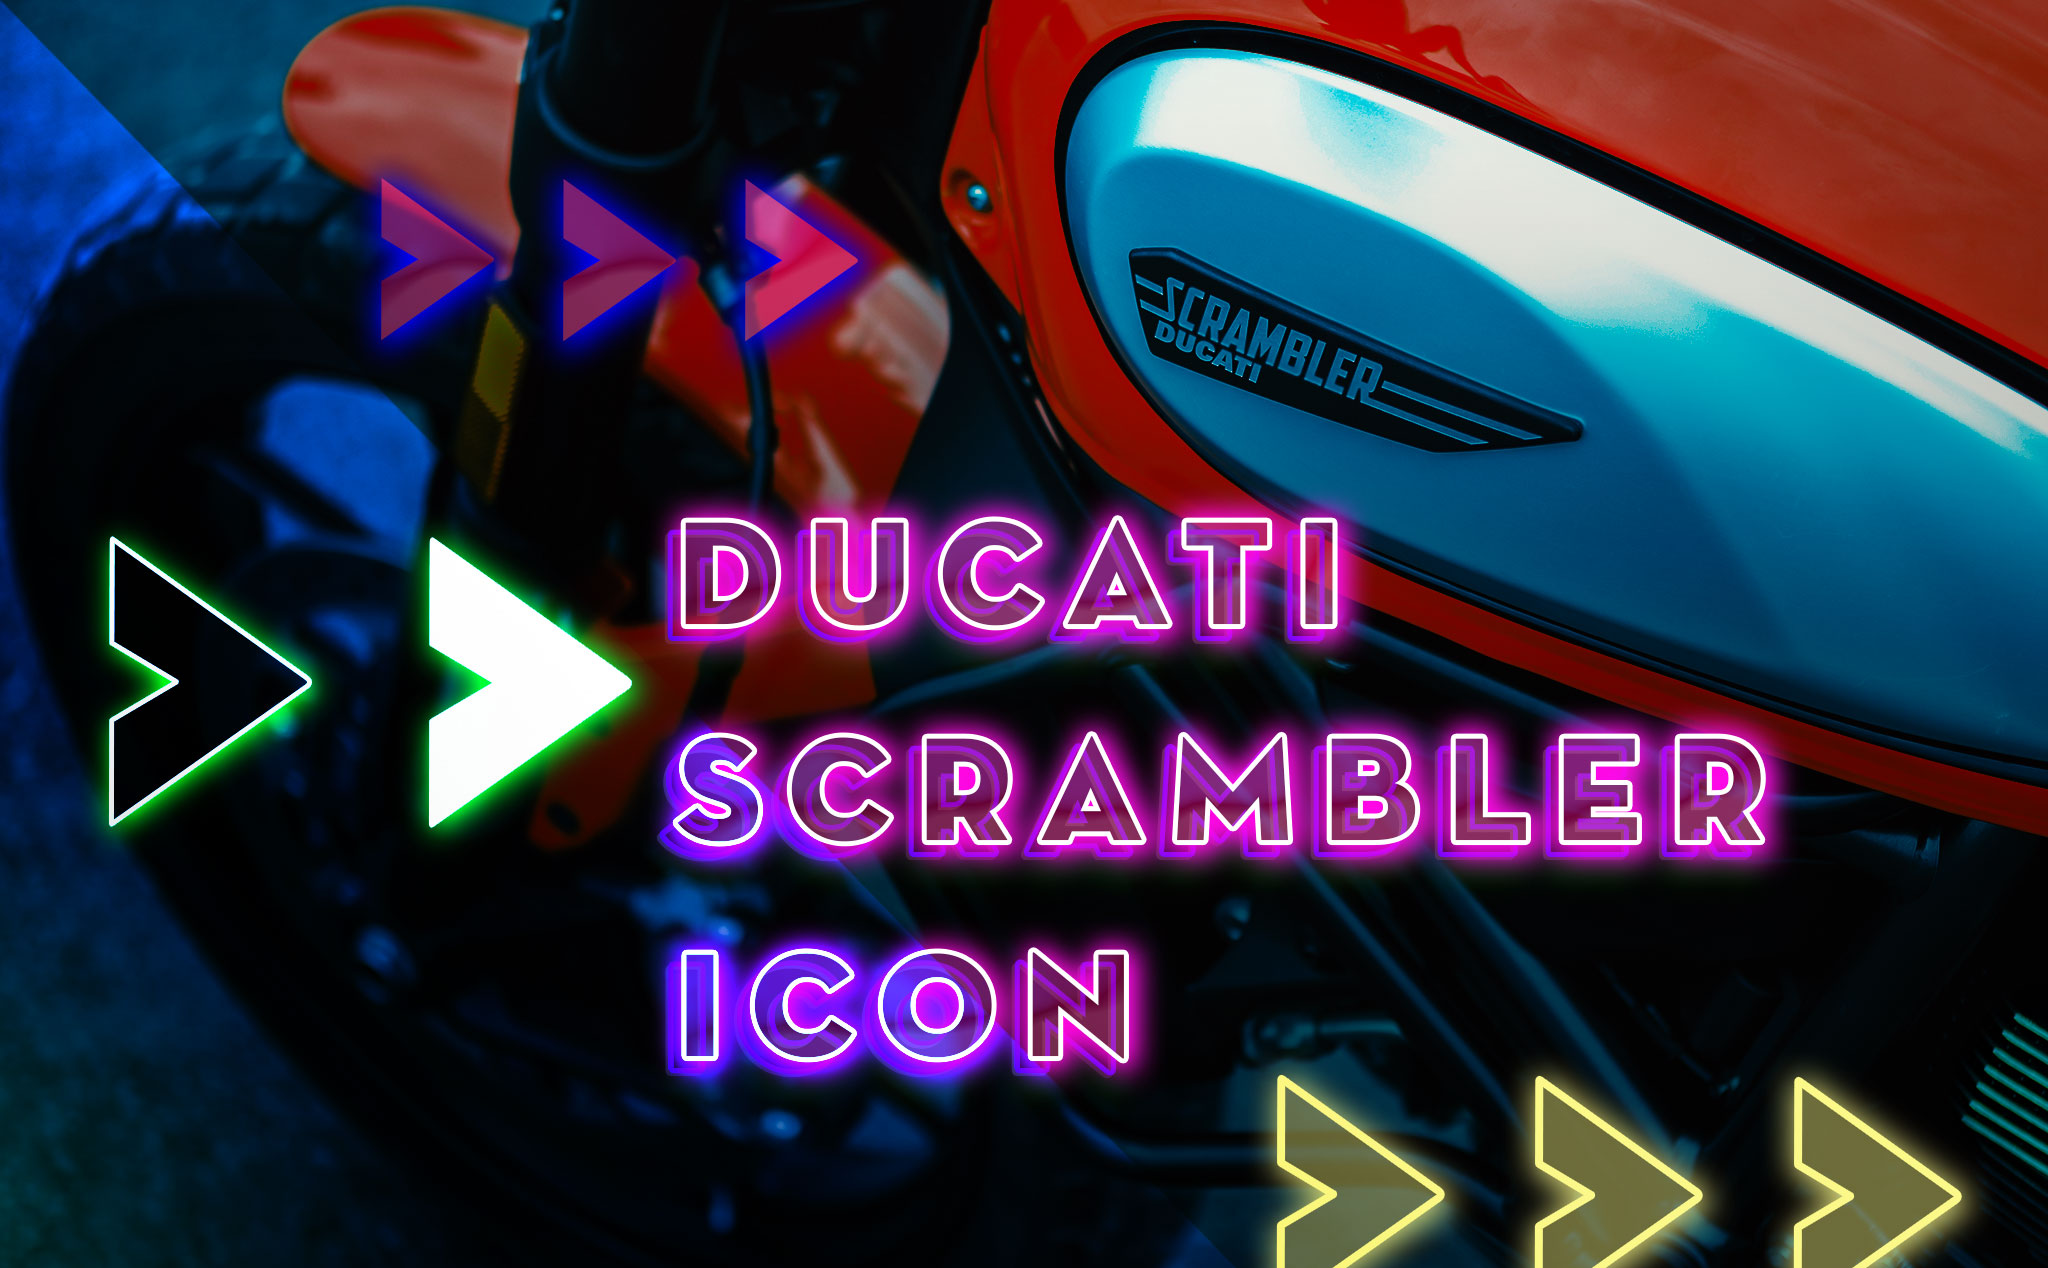 1 tuần với ước mơ - Ducati Scrambler Icon: yêu 1 người là phải yêu cả những khuyết điểm của người đó